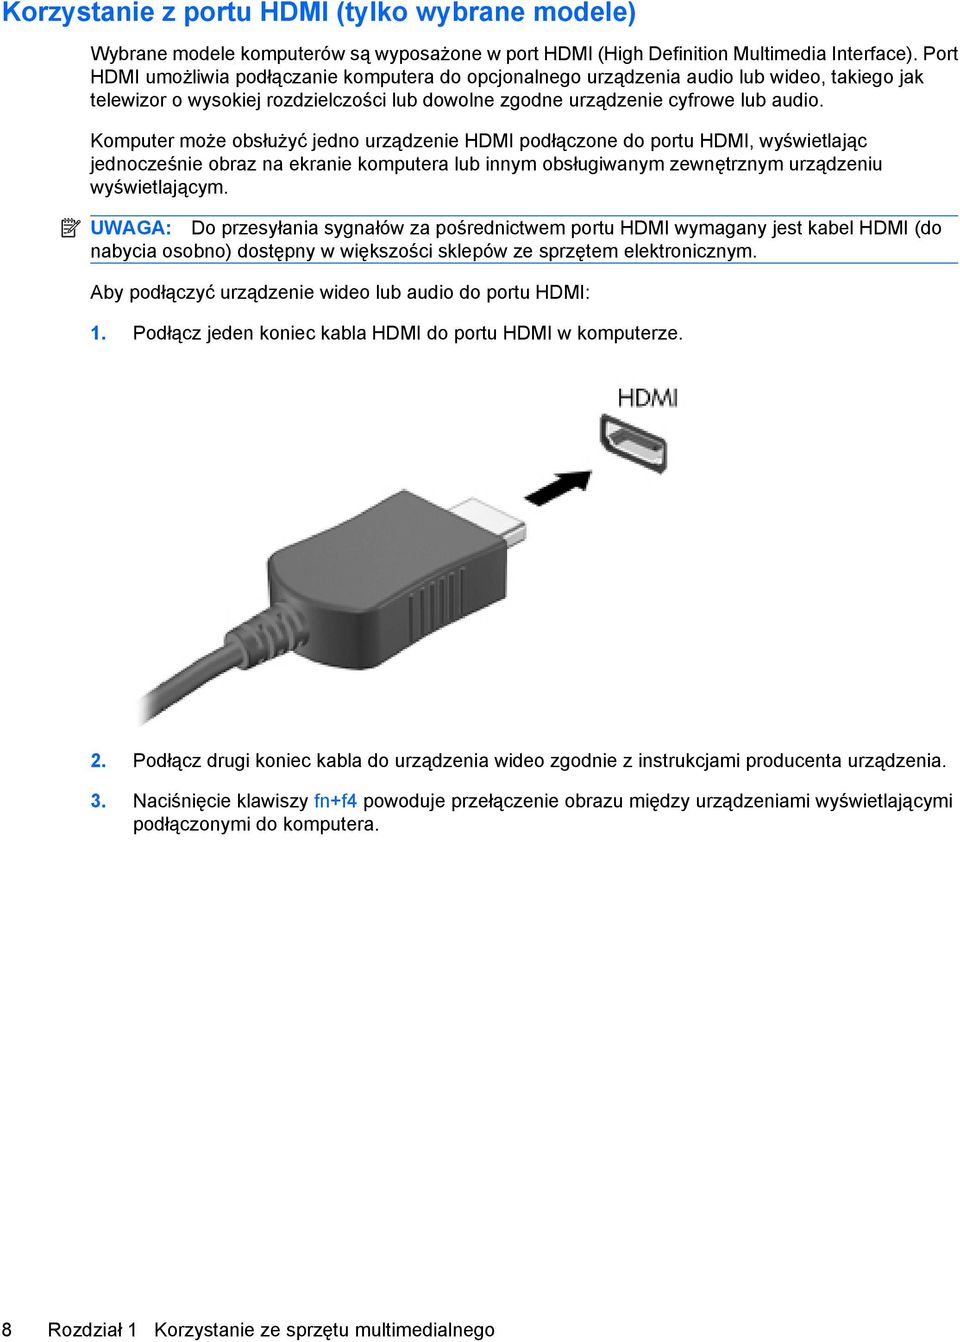 Komputer może obsłużyć jedno urządzenie HDMI podłączone do portu HDMI, wyświetlając jednocześnie obraz na ekranie komputera lub innym obsługiwanym zewnętrznym urządzeniu wyświetlającym.